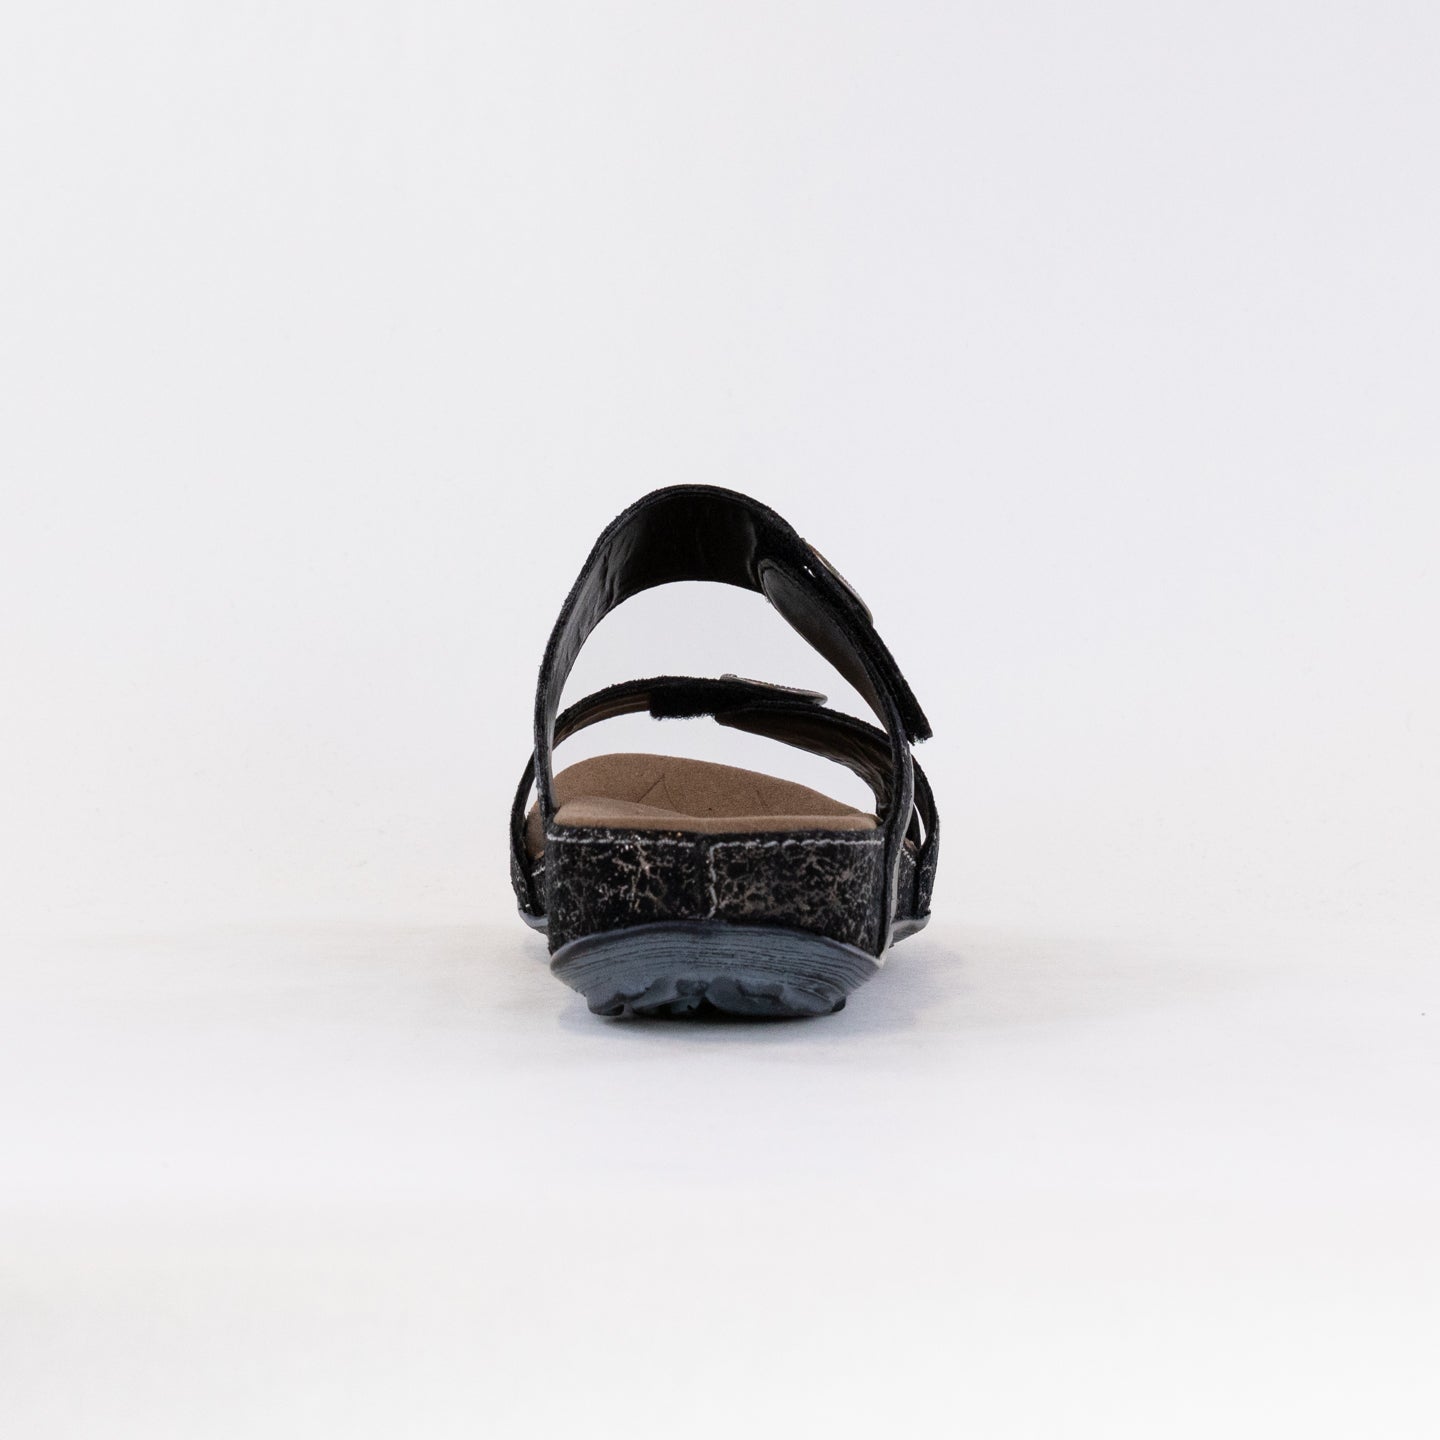 Romika Fidschi 22 Sandal (Women's) - Black Multi